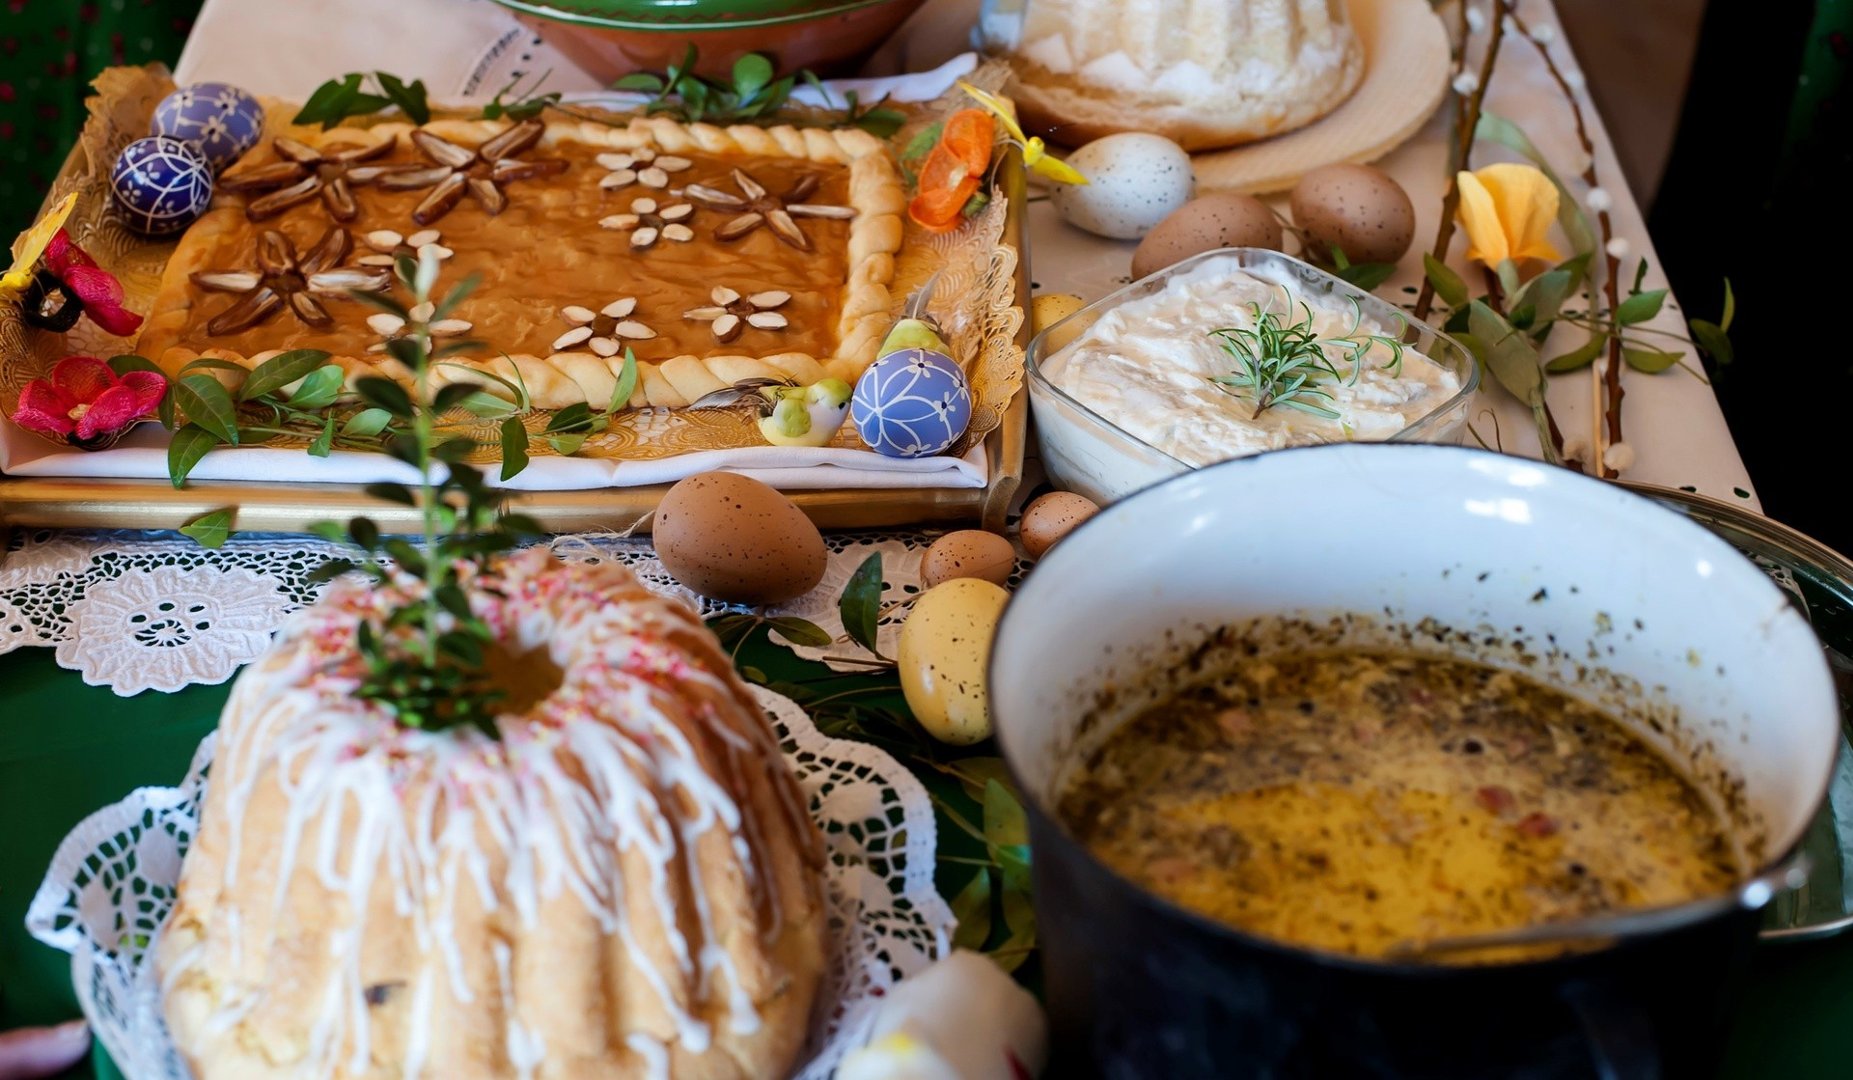 Menu na Wielkanoc – śniadanie wielkanocne. Tradycyjne dania wielkanocne,  potrawy na wielkanocne śniadanie [PRZEPISY] | Gazeta Krakowska